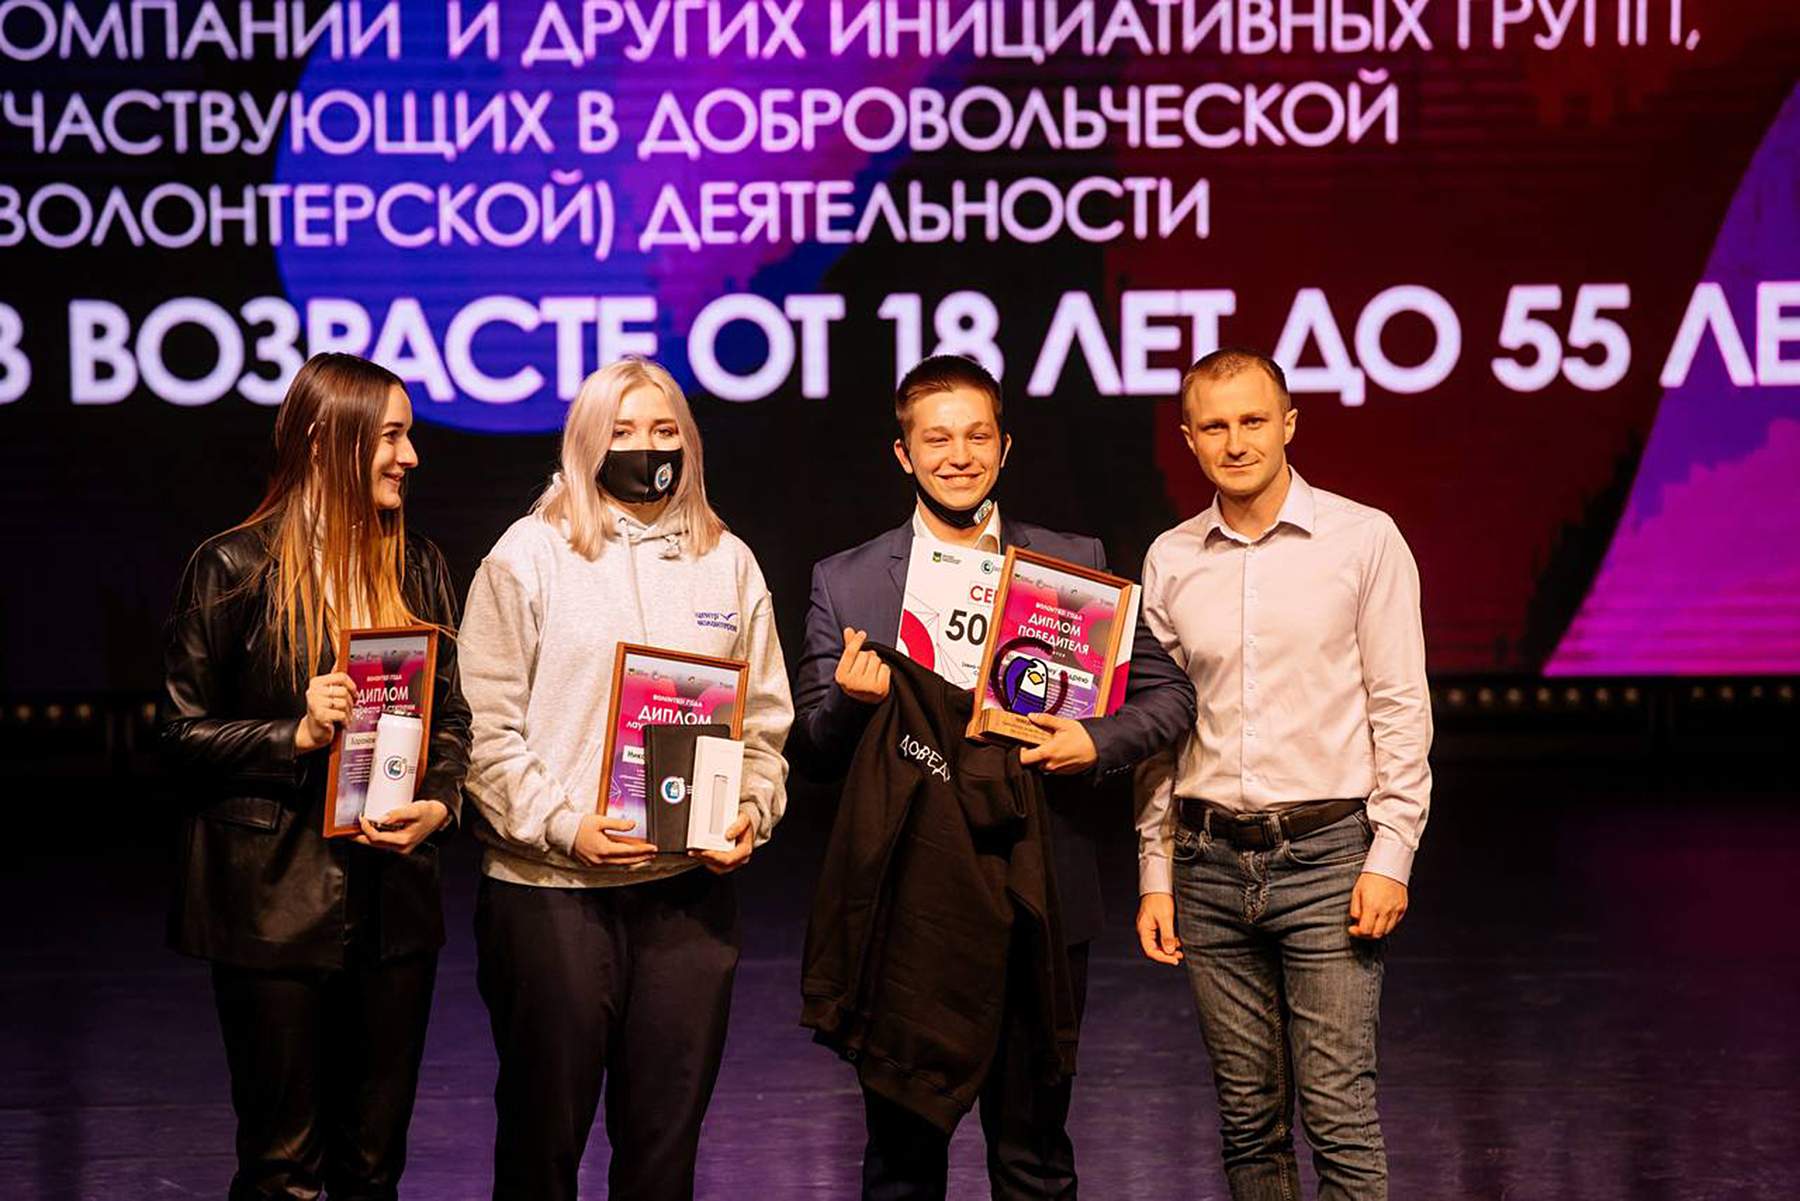 Сотрудники и студенты ВГУЭС получили Почетный знак «Доброволец Приморского края» и титул «Волонтера года»